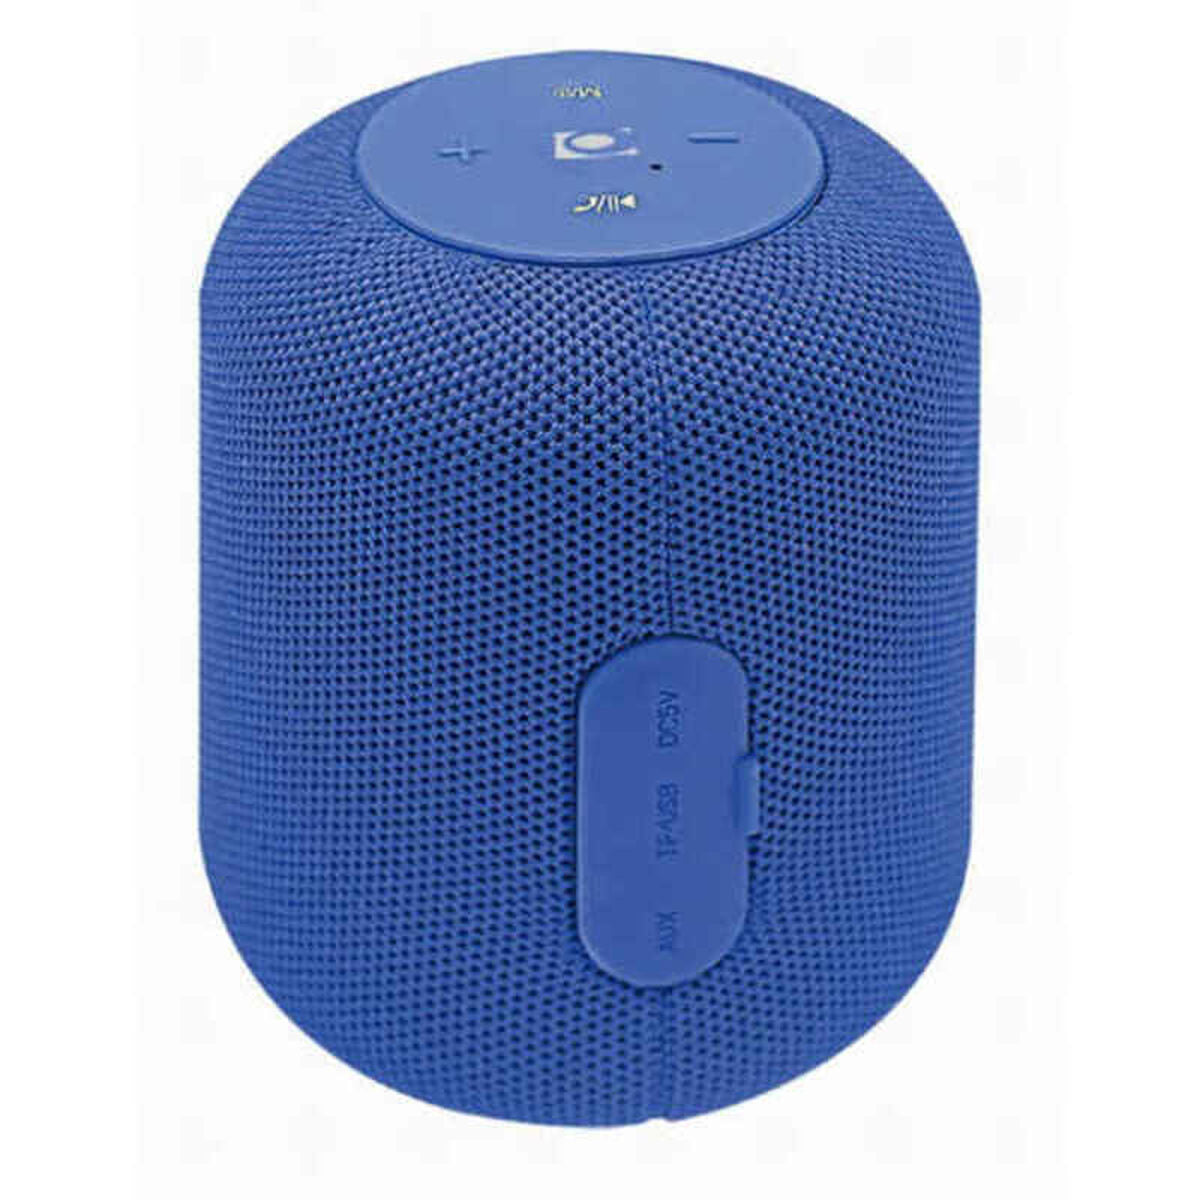 Altoparlante Bluetooth Portatile GEMBIRD 5 W Colore:Azzurro - Disponibile in 3-4 giorni lavorativi